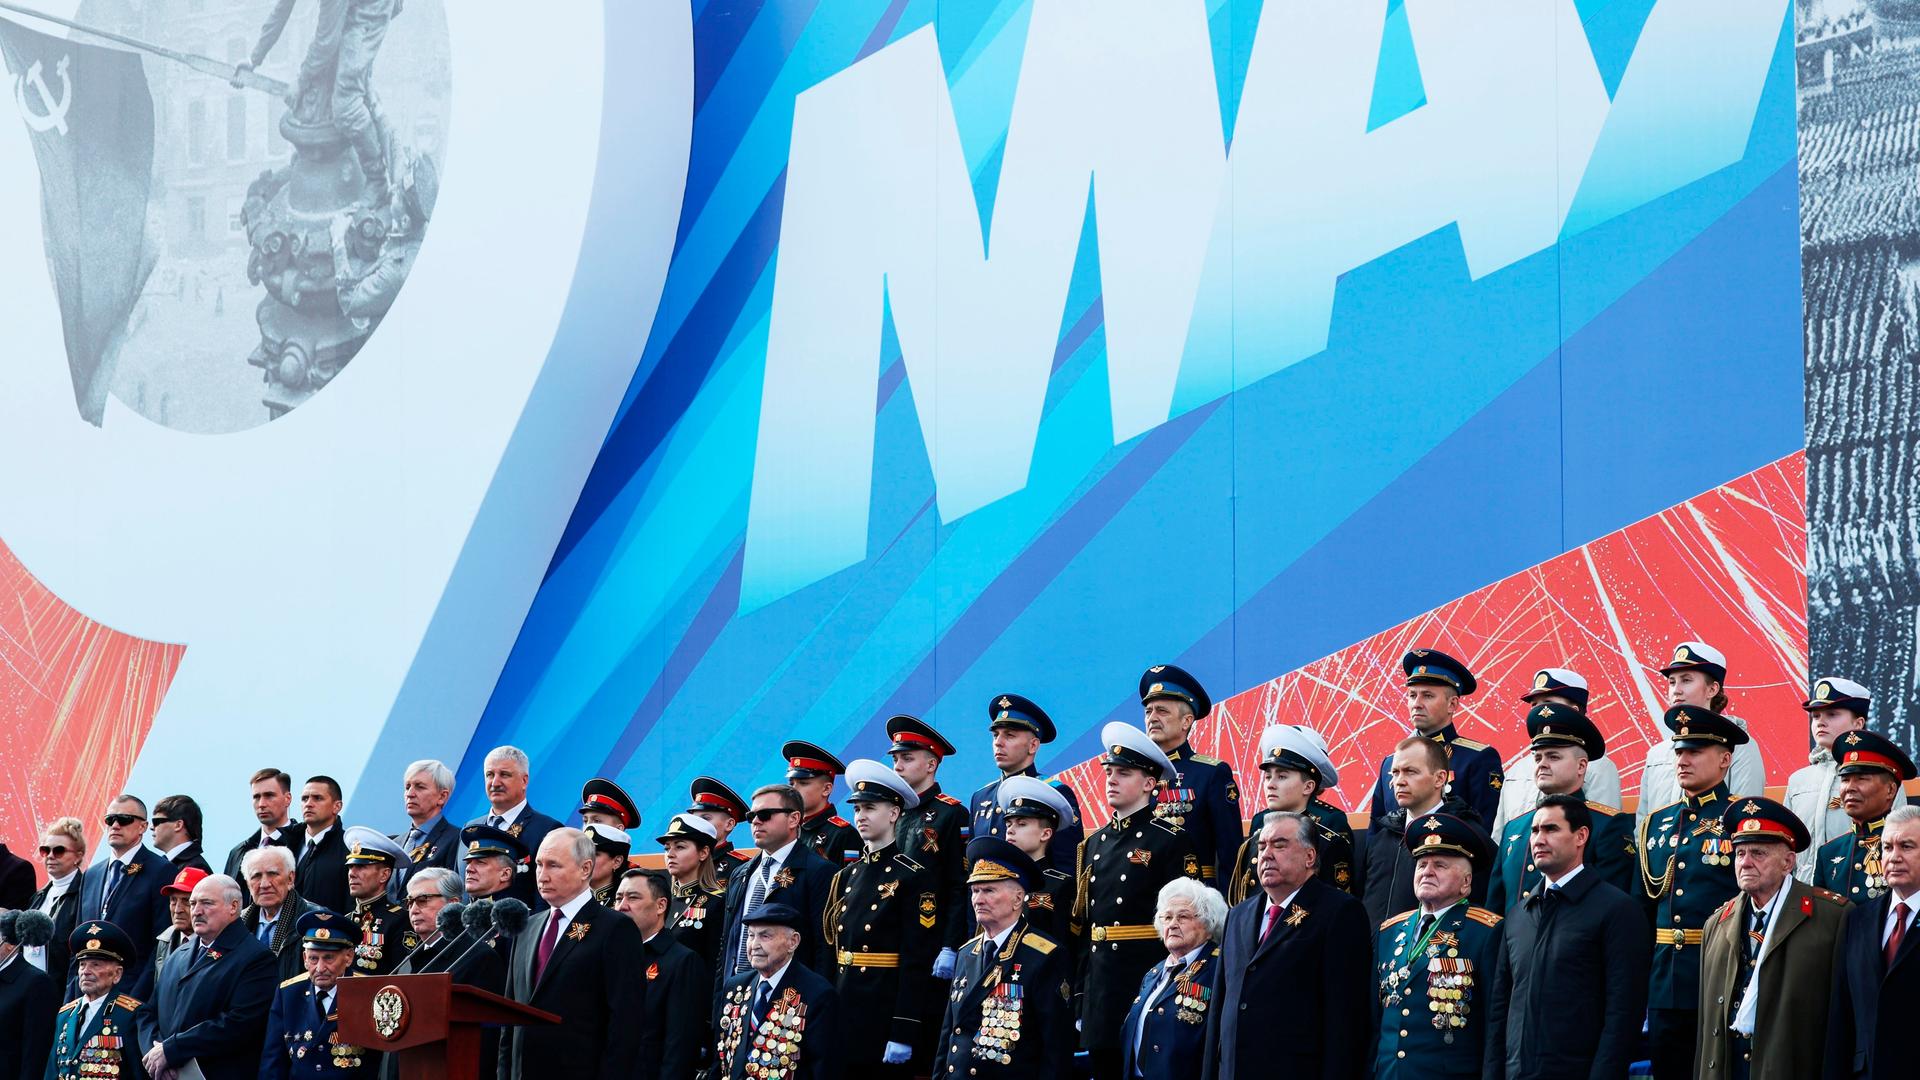 Russland, Moskau: Der russische Präsident Wladimir Putin hält eine Rede während der Militärparade am Tag des Sieges anlässlich des 78. Jahrestages des Endes des Zweiten Weltkrieges auf dem Roten Platz in Moskau.